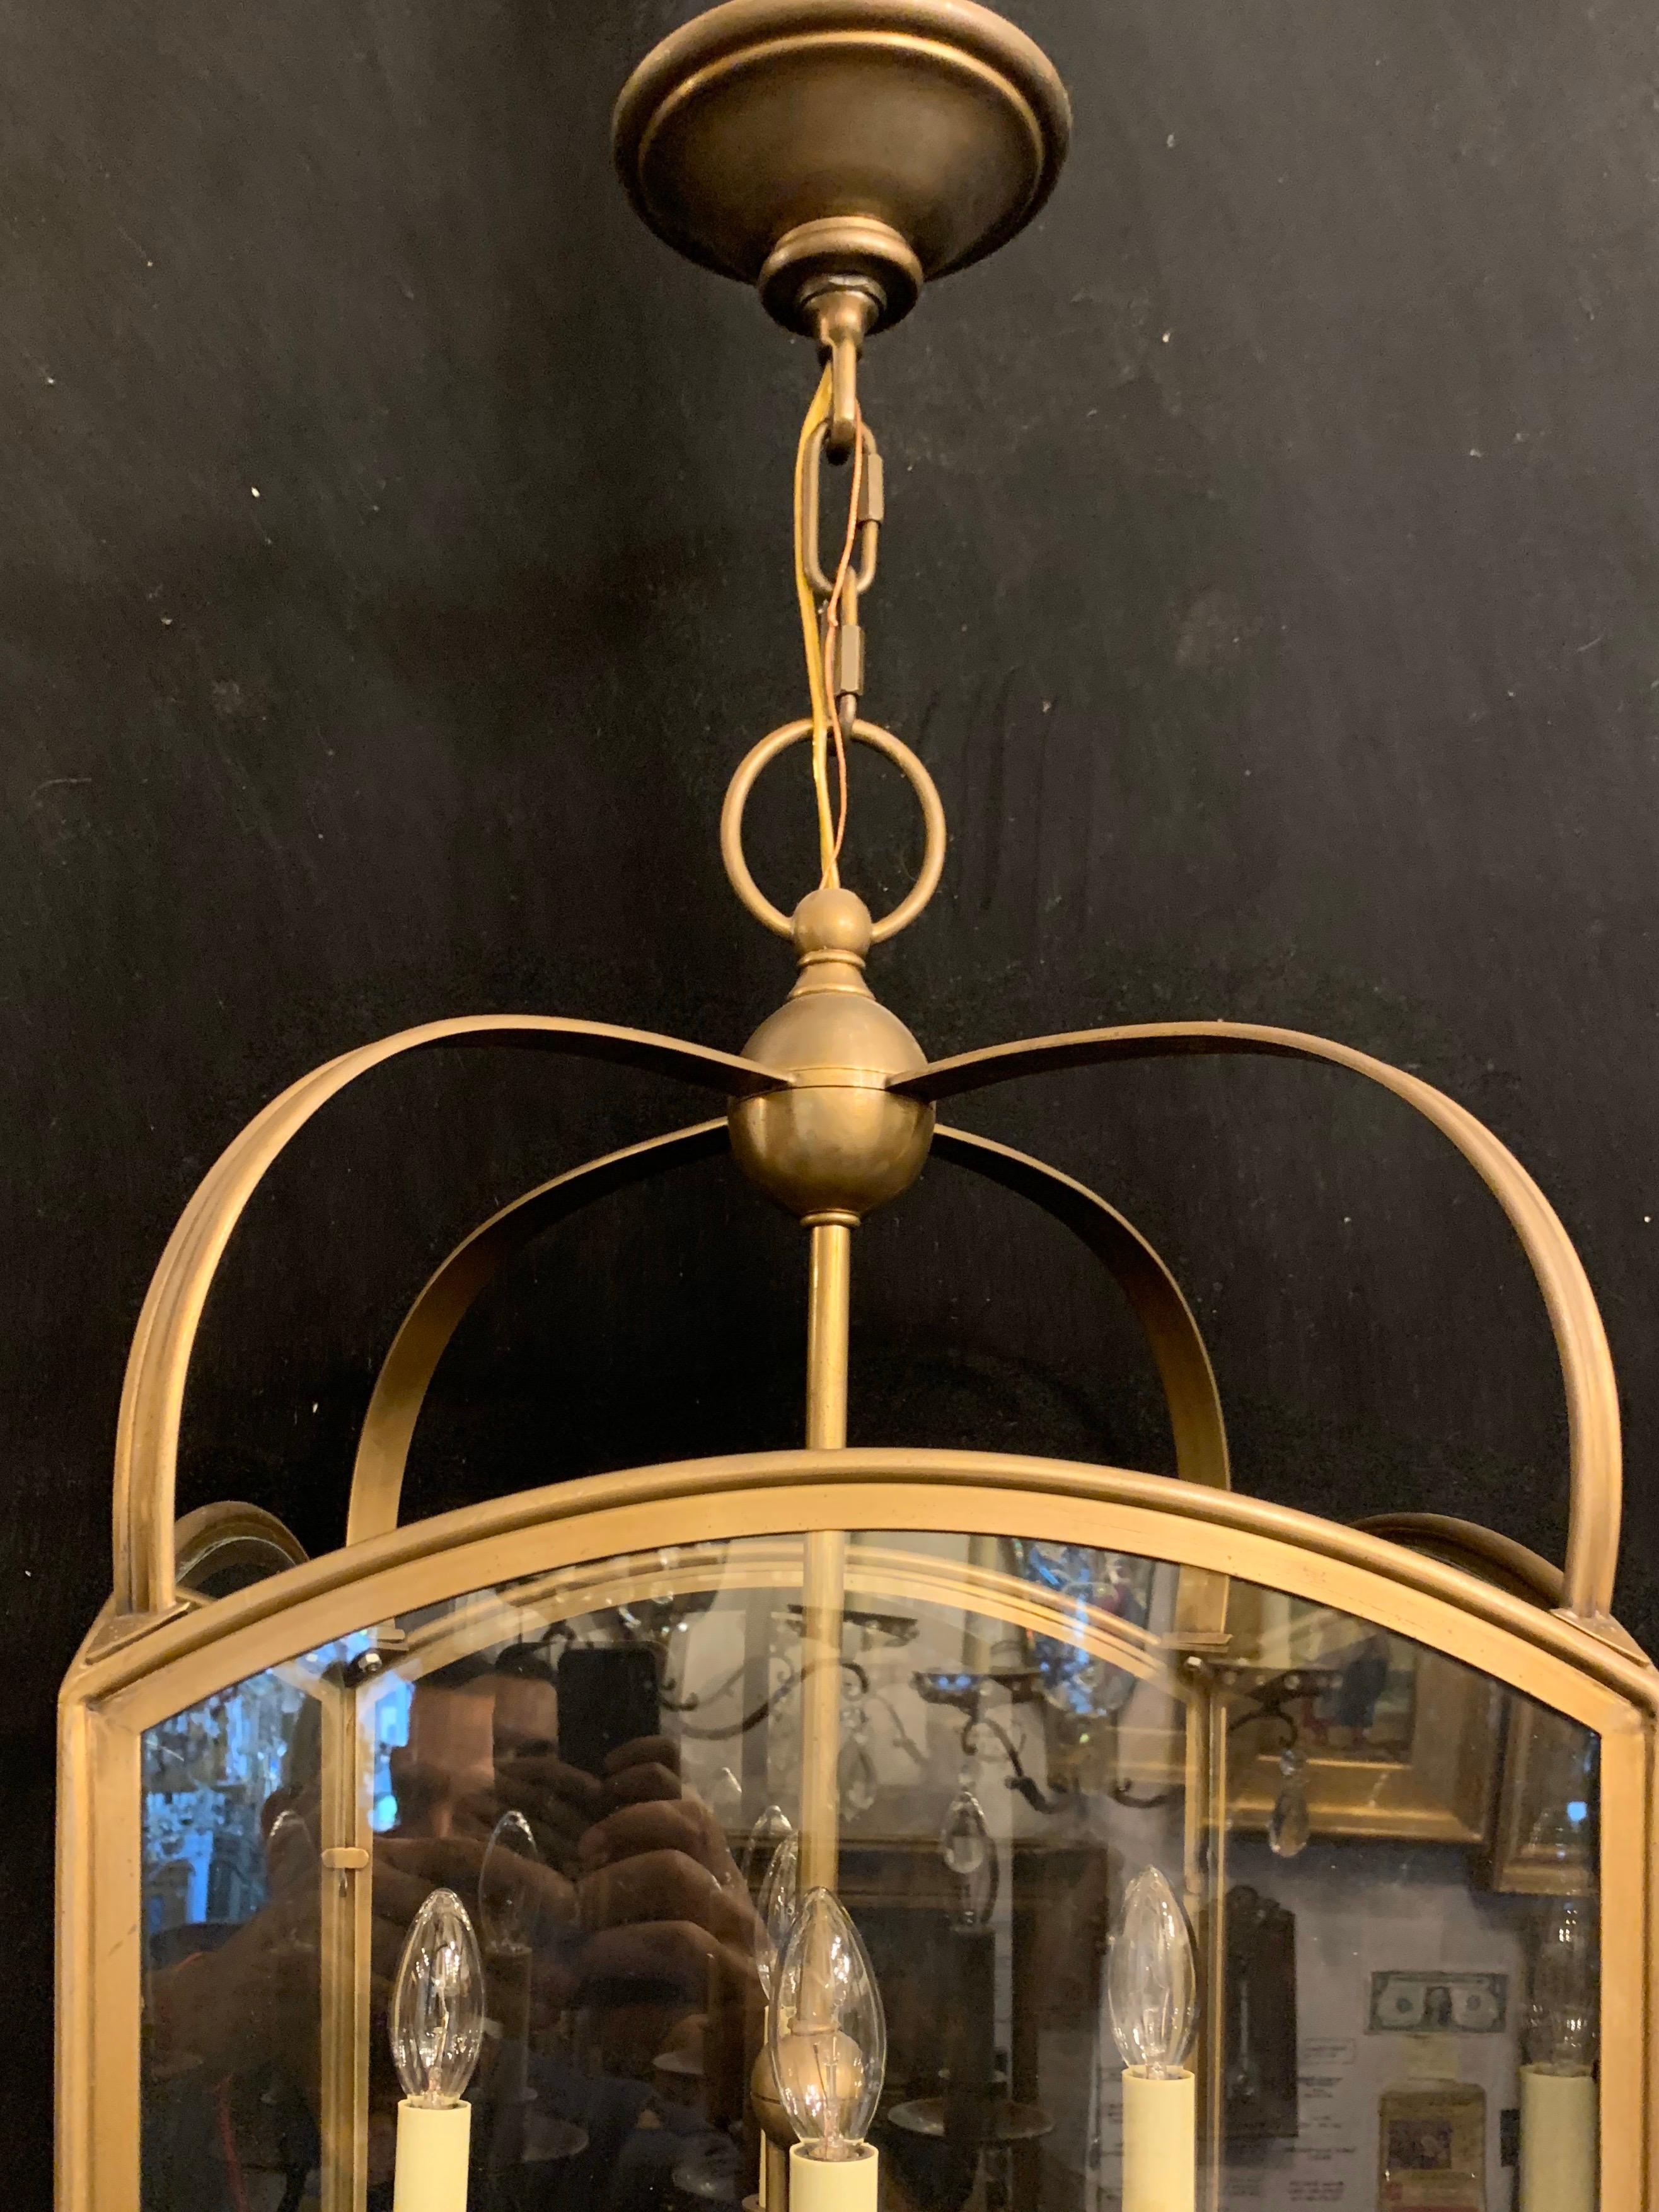 Magnifique lanterne carrée à 4 lumières en bronze et verre de Vaughan Design/One.